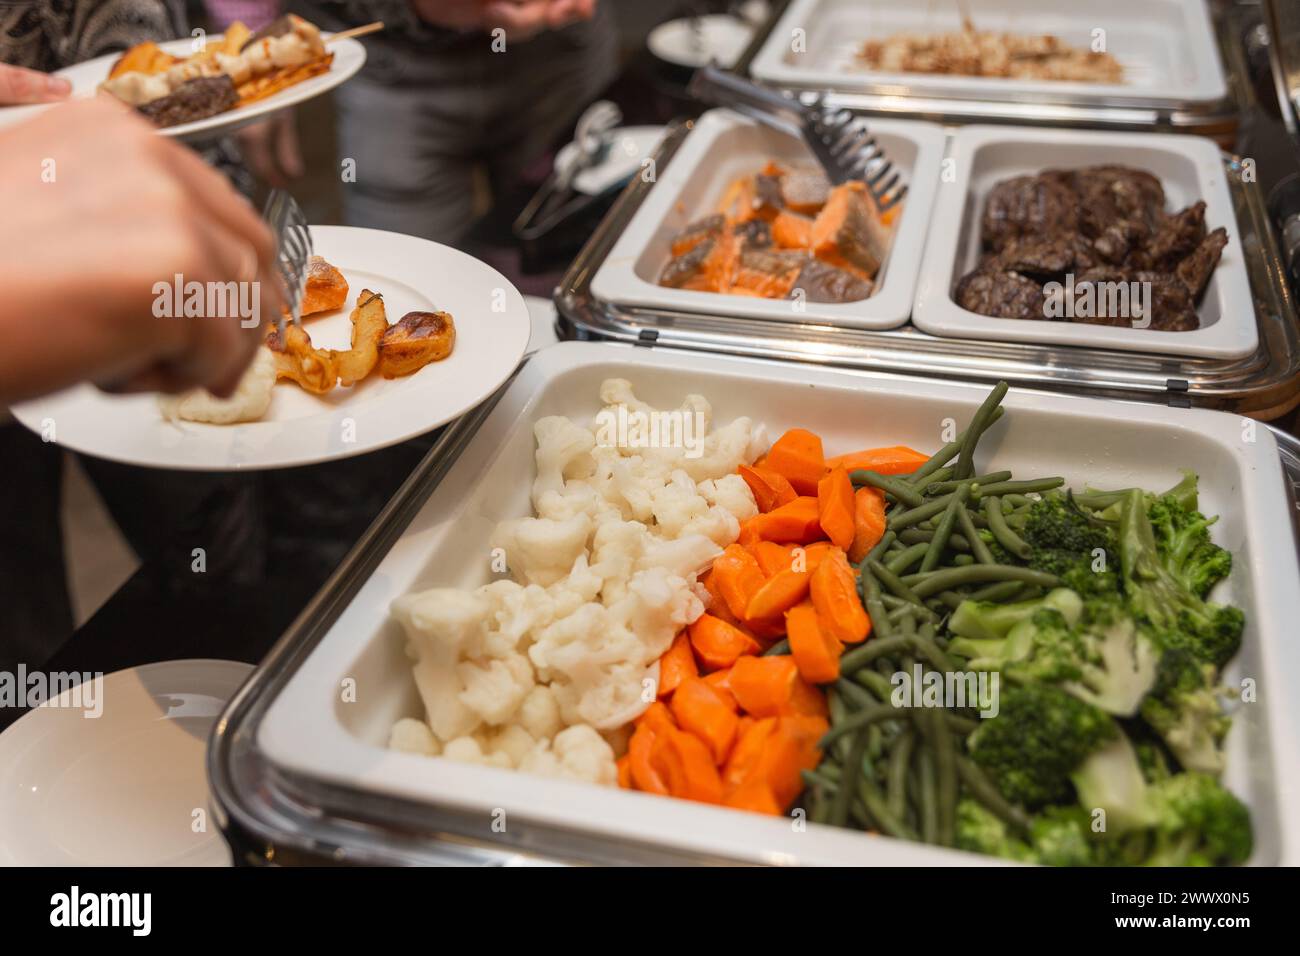 Les participants au séminaire d’affaires choisissent leur nourriture pendant leur pause déjeuner dans un restaurant buffet en libre-service Banque D'Images